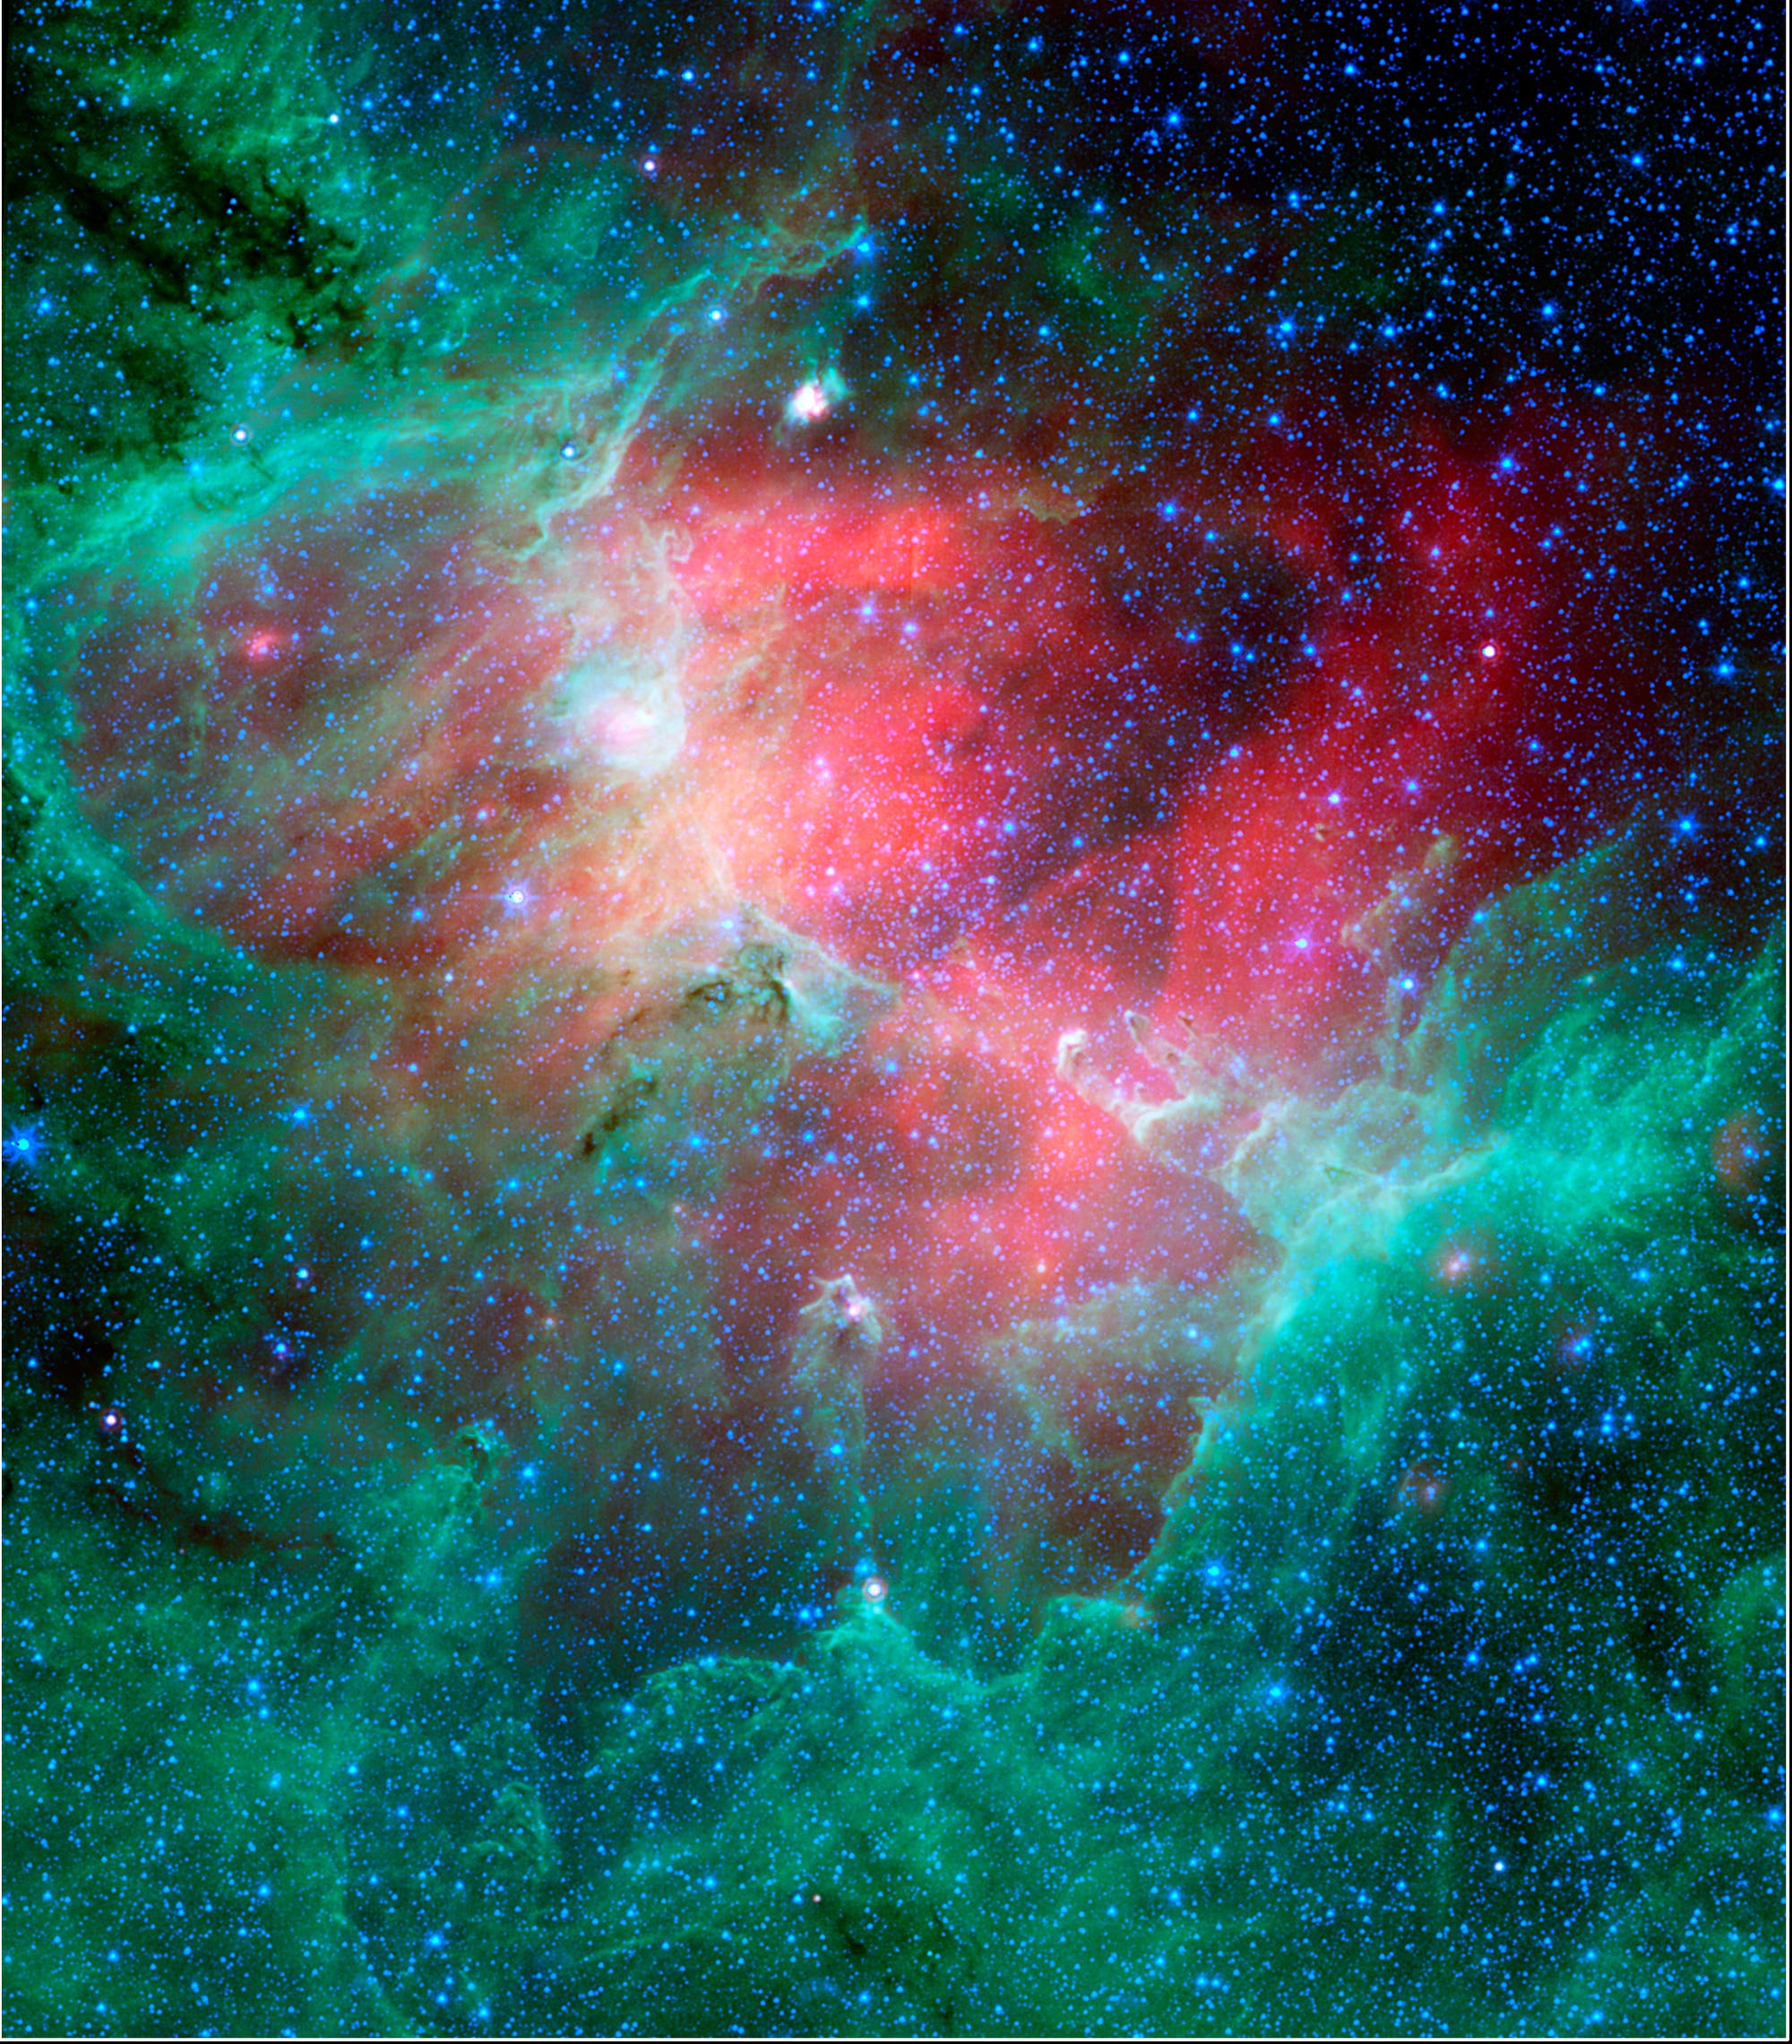 Supernova in M16